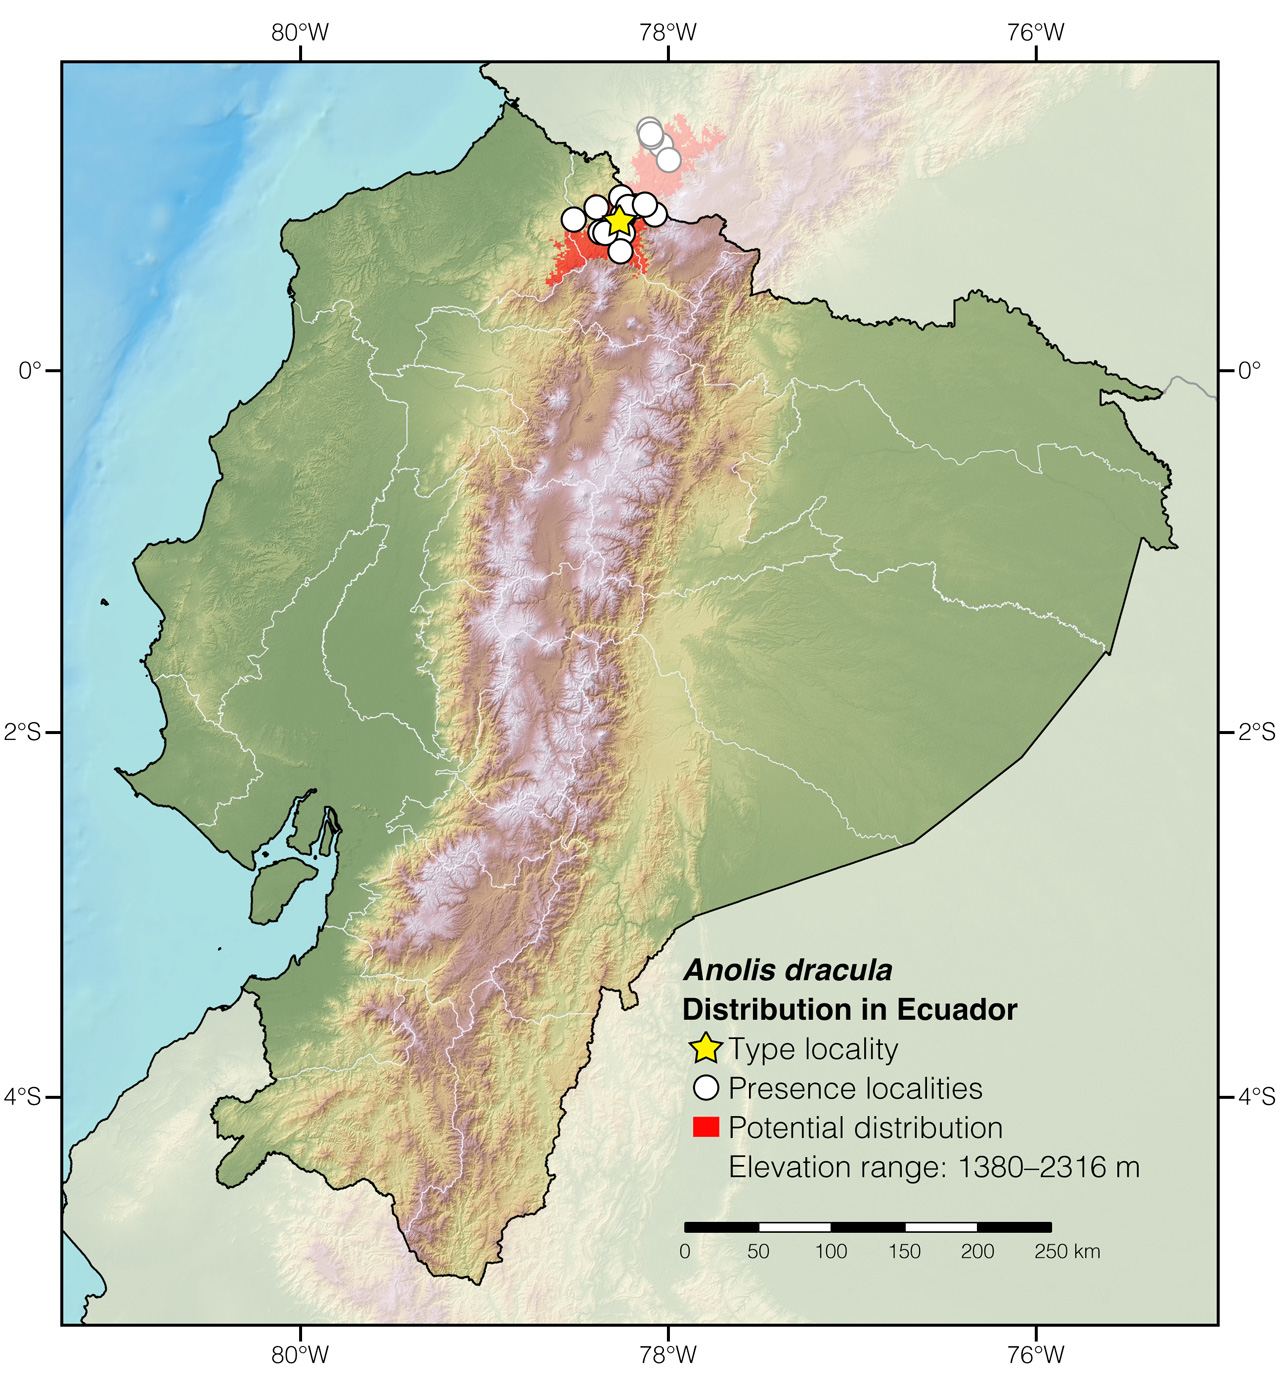 Distribution of Anolis dracula in Ecuador